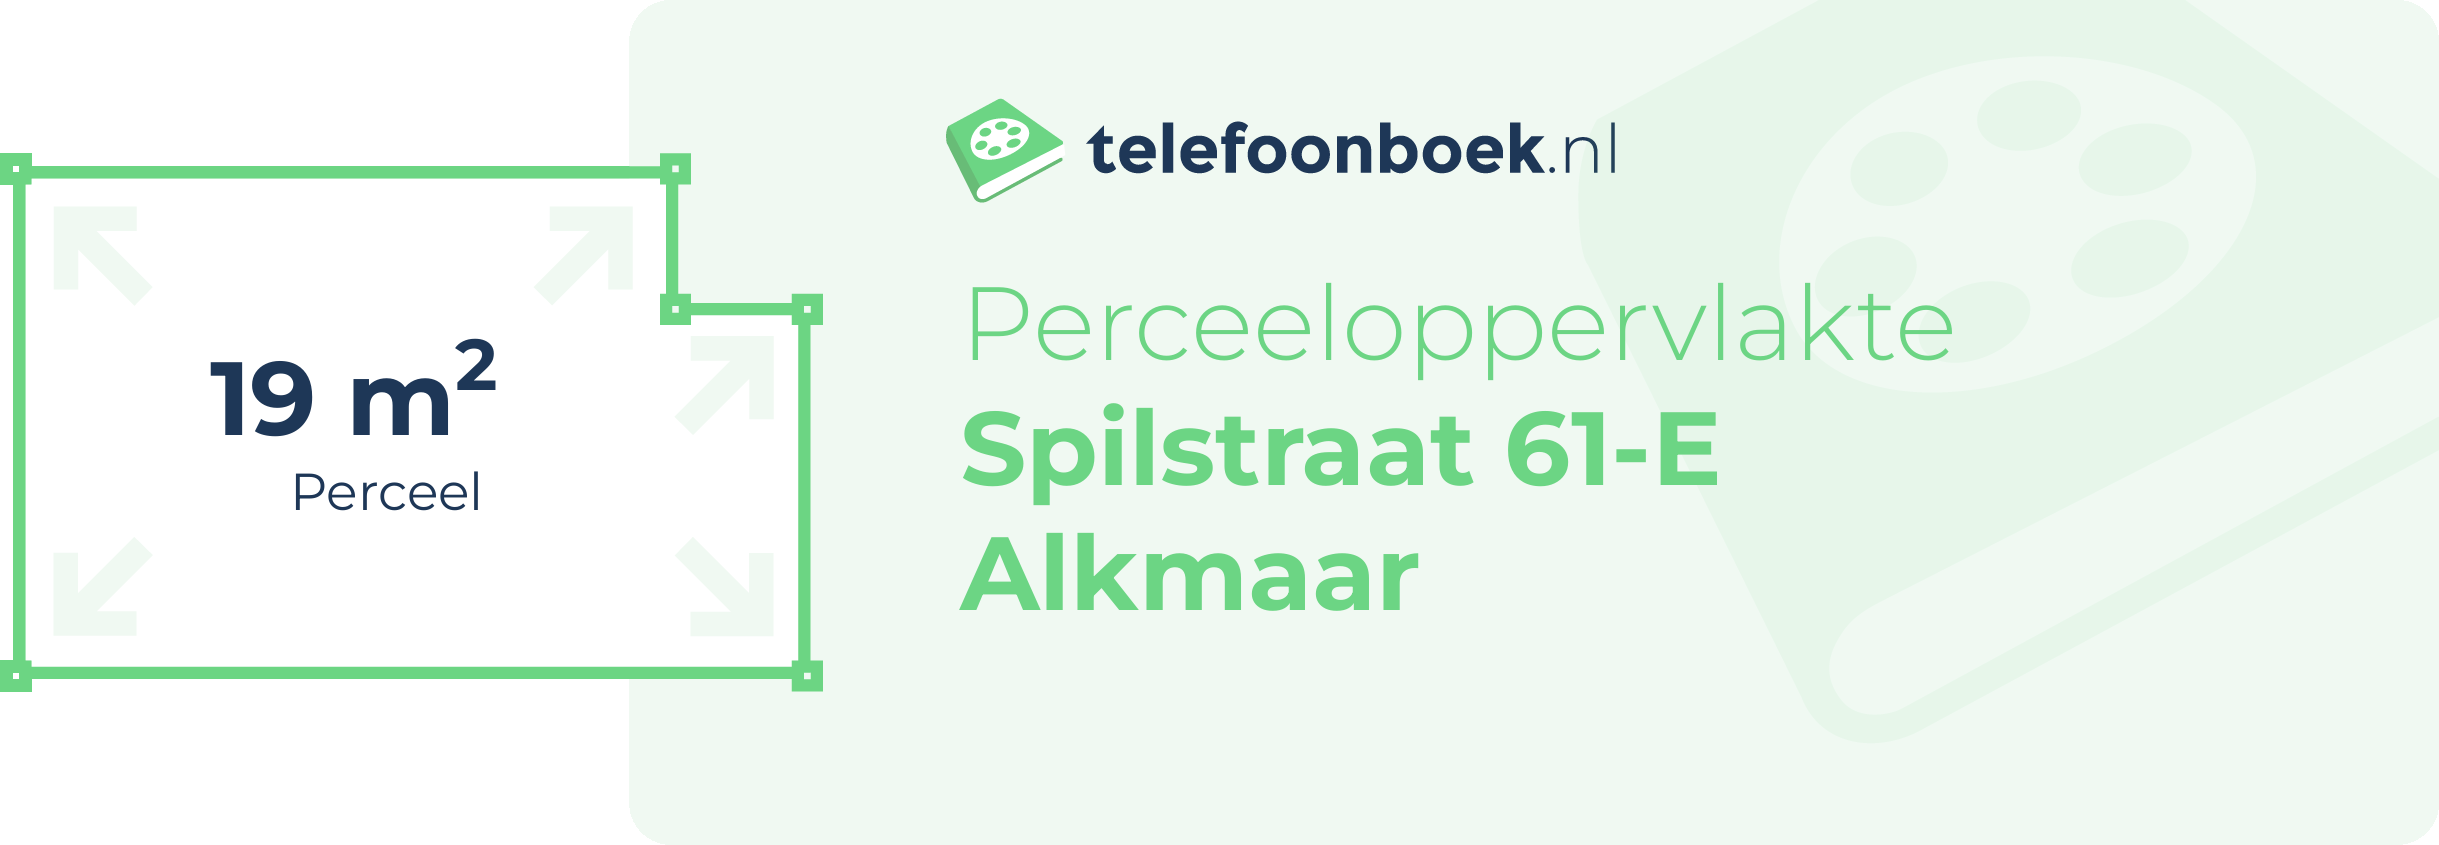 Perceeloppervlakte Spilstraat 61-E Alkmaar